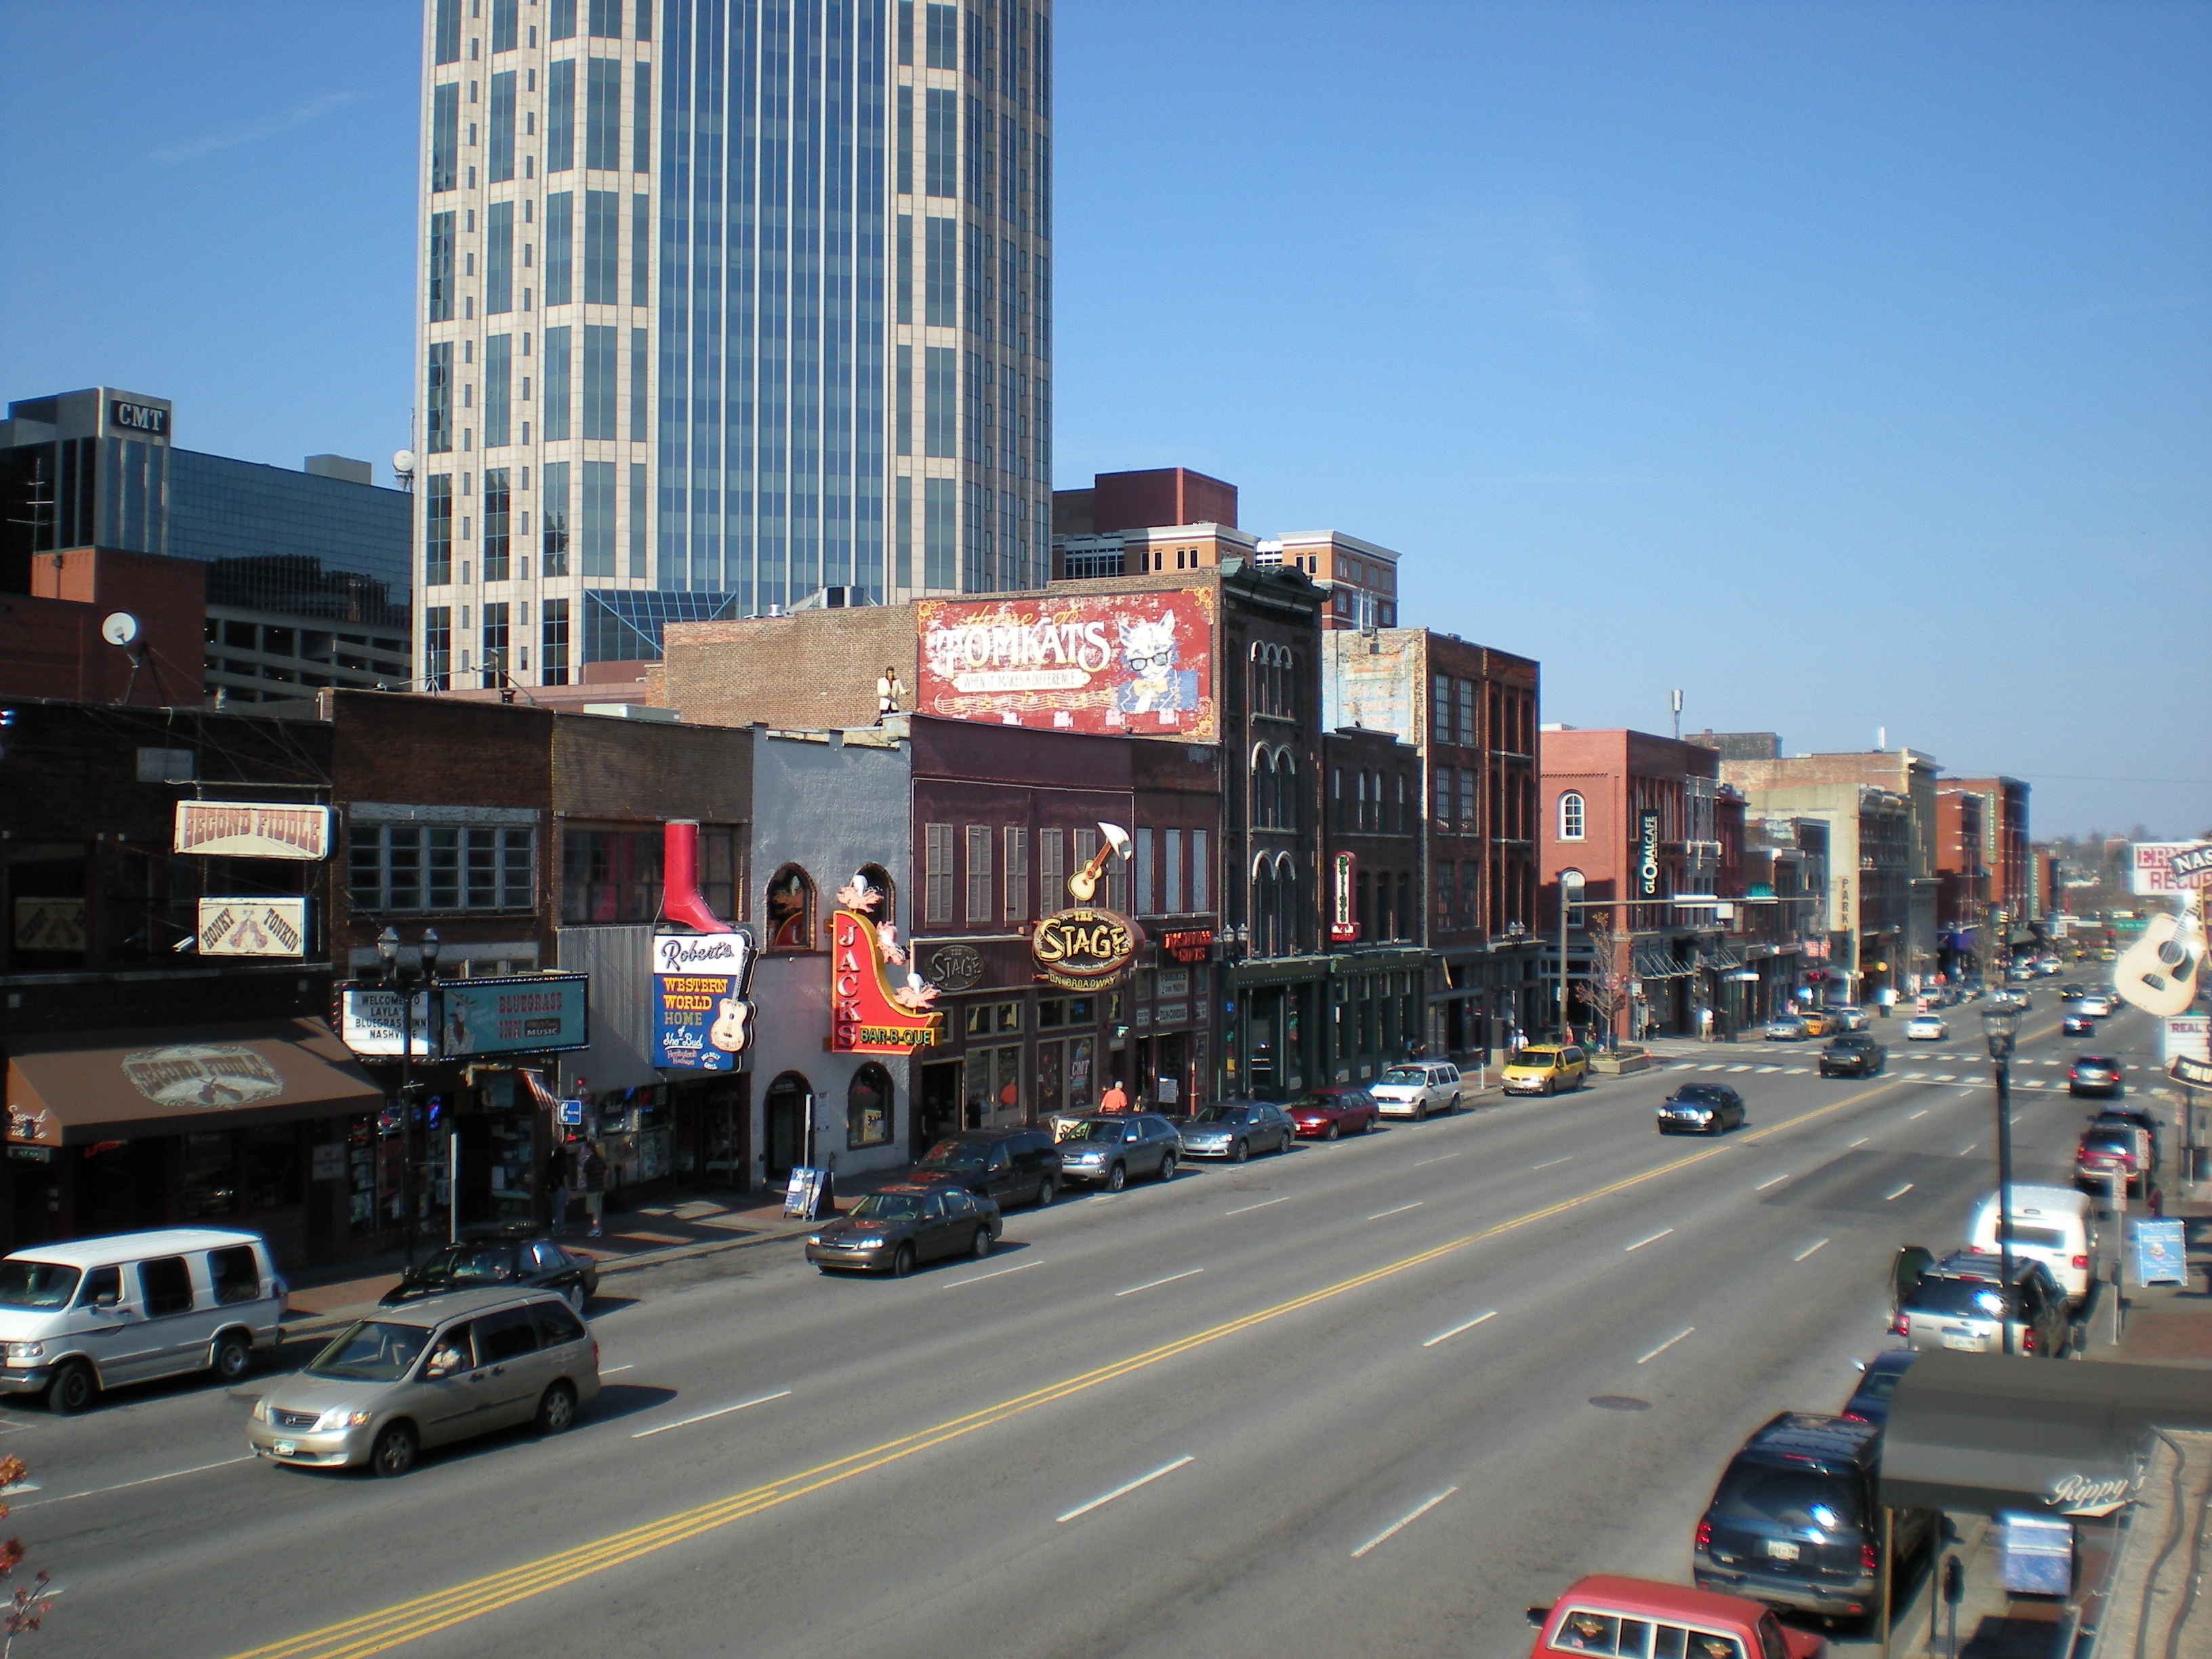  Nashville, Tennessee
